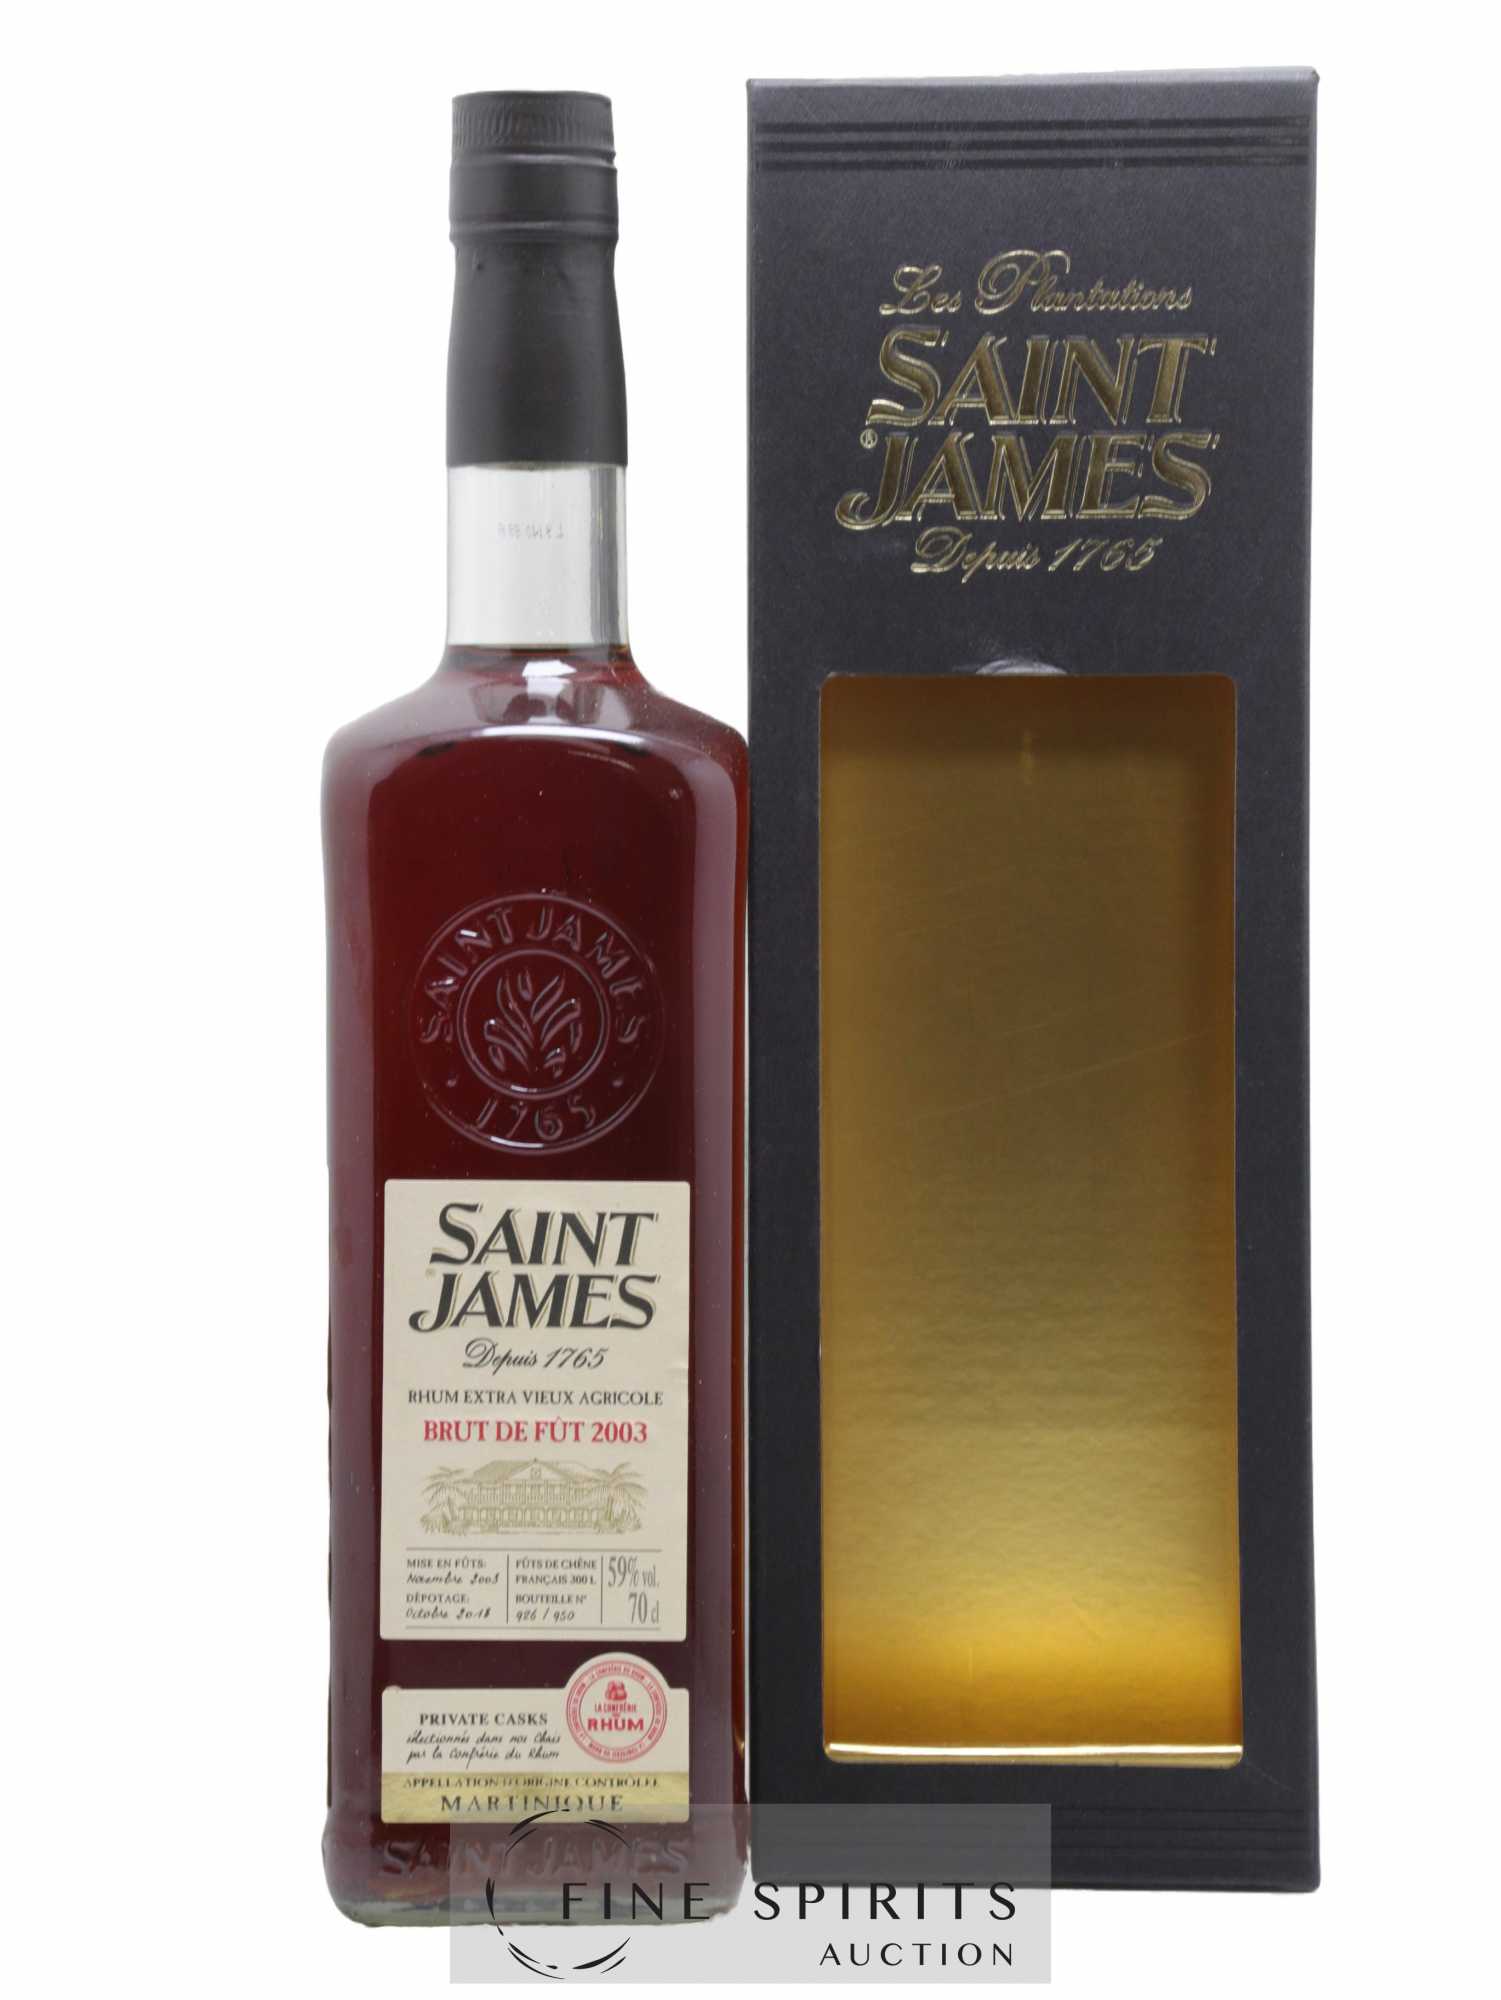 Saint James 2003 Of. Brut de Fût - One of 950 - bottled 2018 La Confrérie du Rhum Private Casks